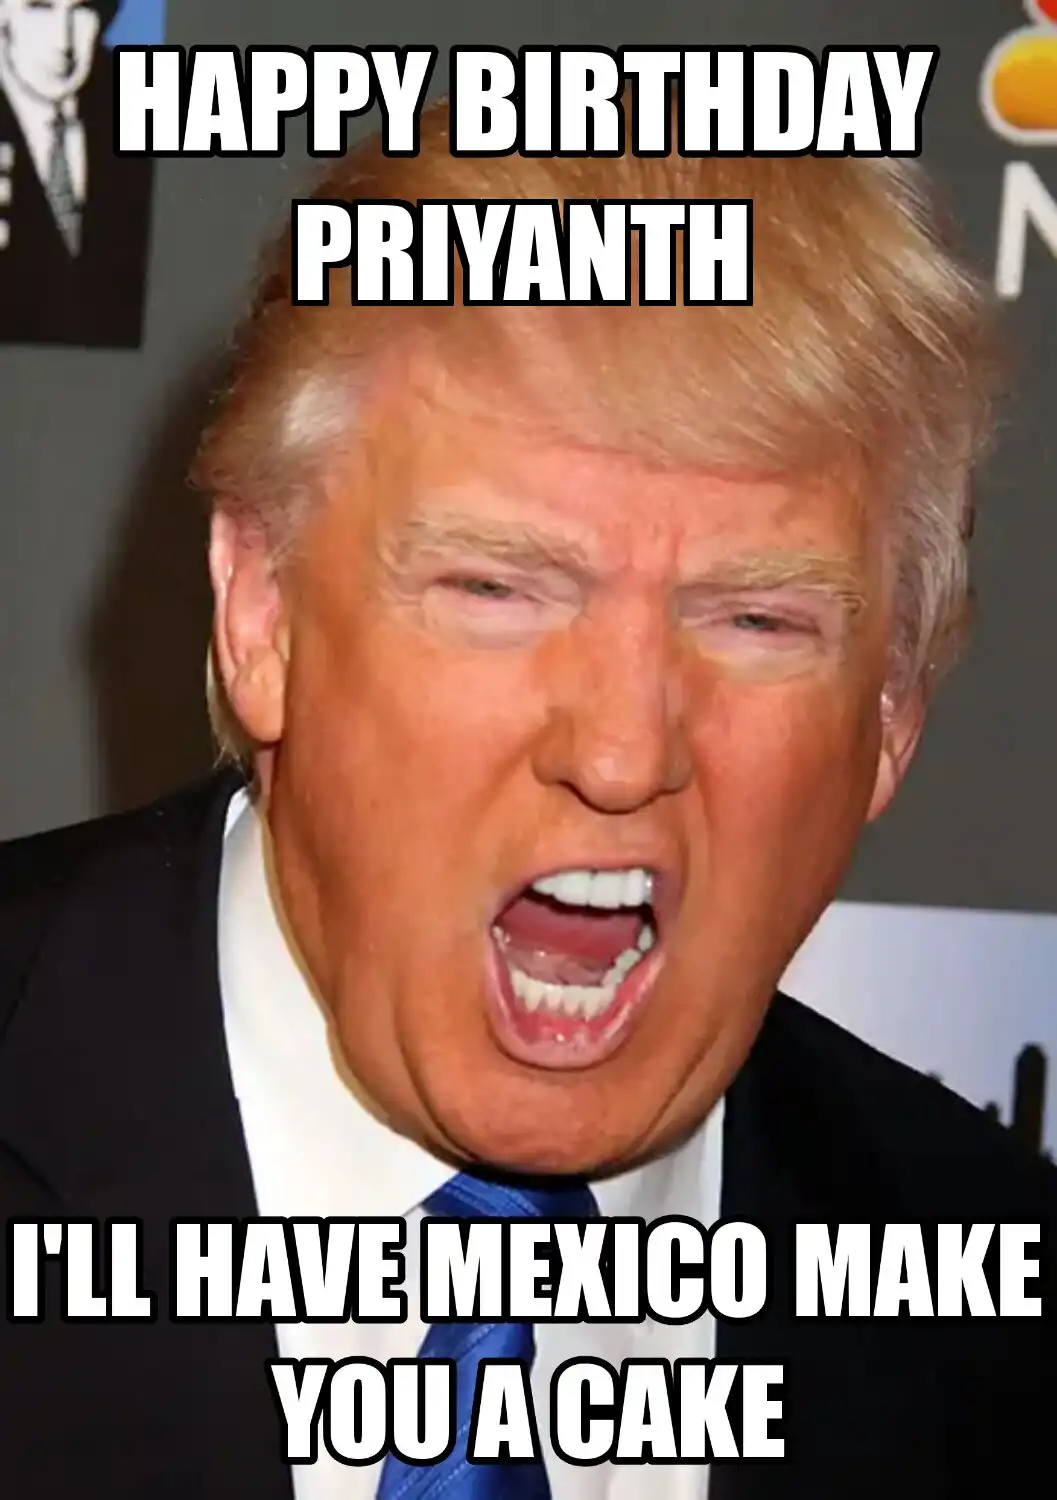 Happy Birthday Priyanth Mexico Make You A Cake Meme